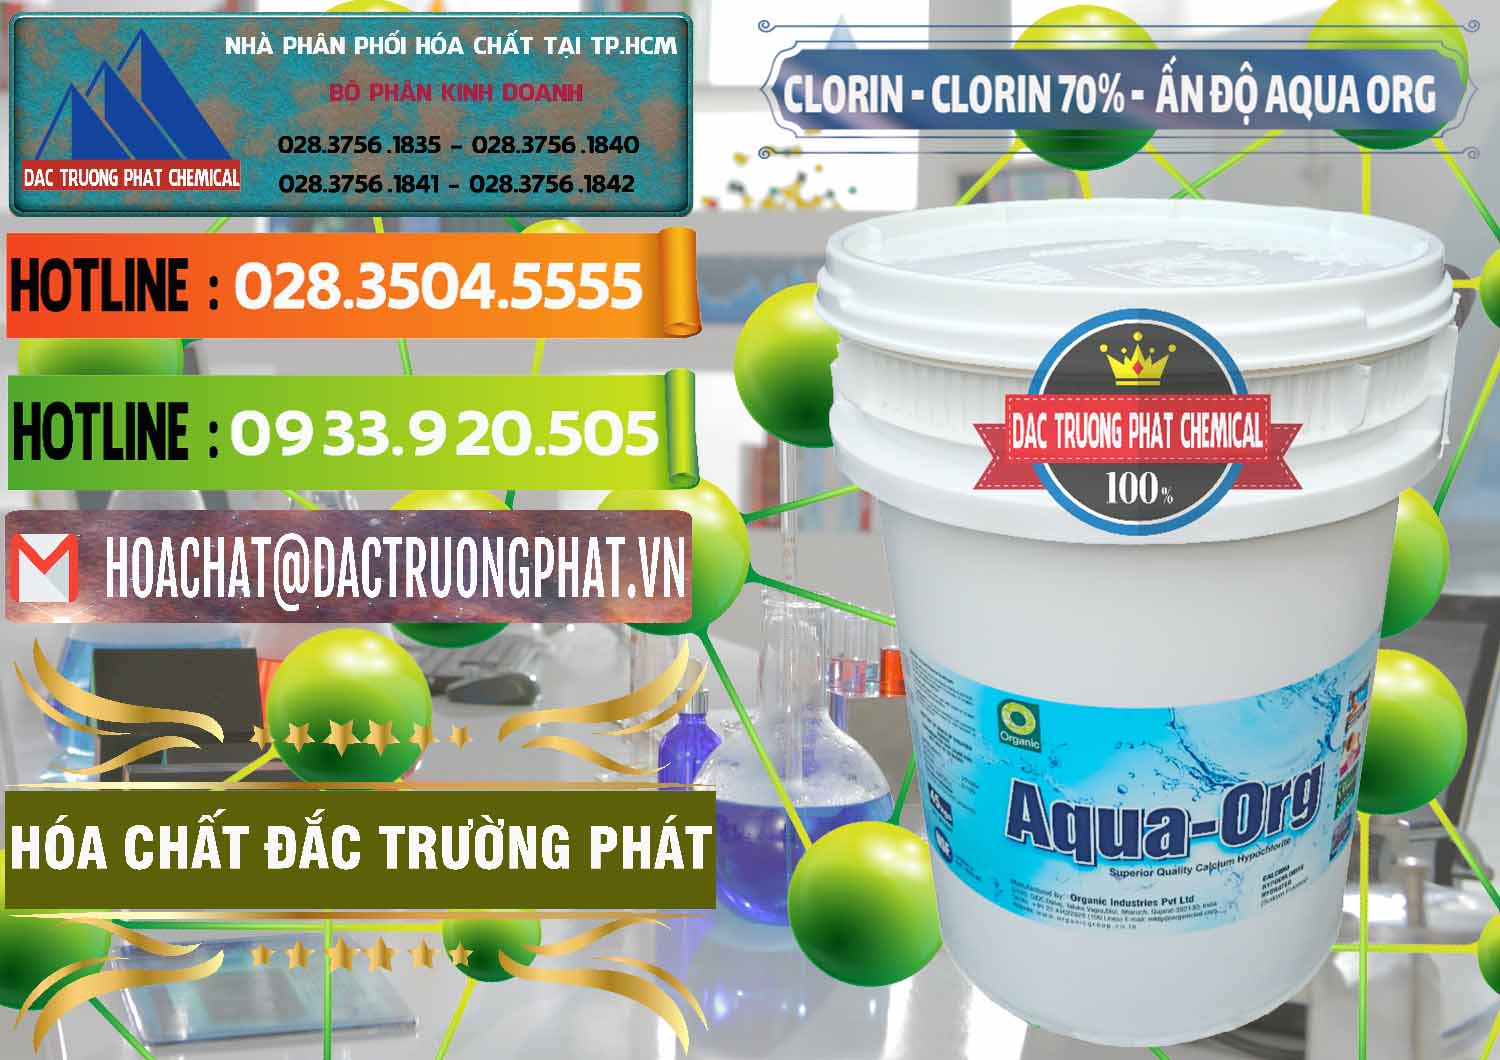 Nơi chuyên cung cấp ( bán ) Chlorine – Clorin Ấn Độ Aqua ORG Organic India - 0051 - Chuyên cung cấp và phân phối hóa chất tại TP.HCM - cungcaphoachat.com.vn